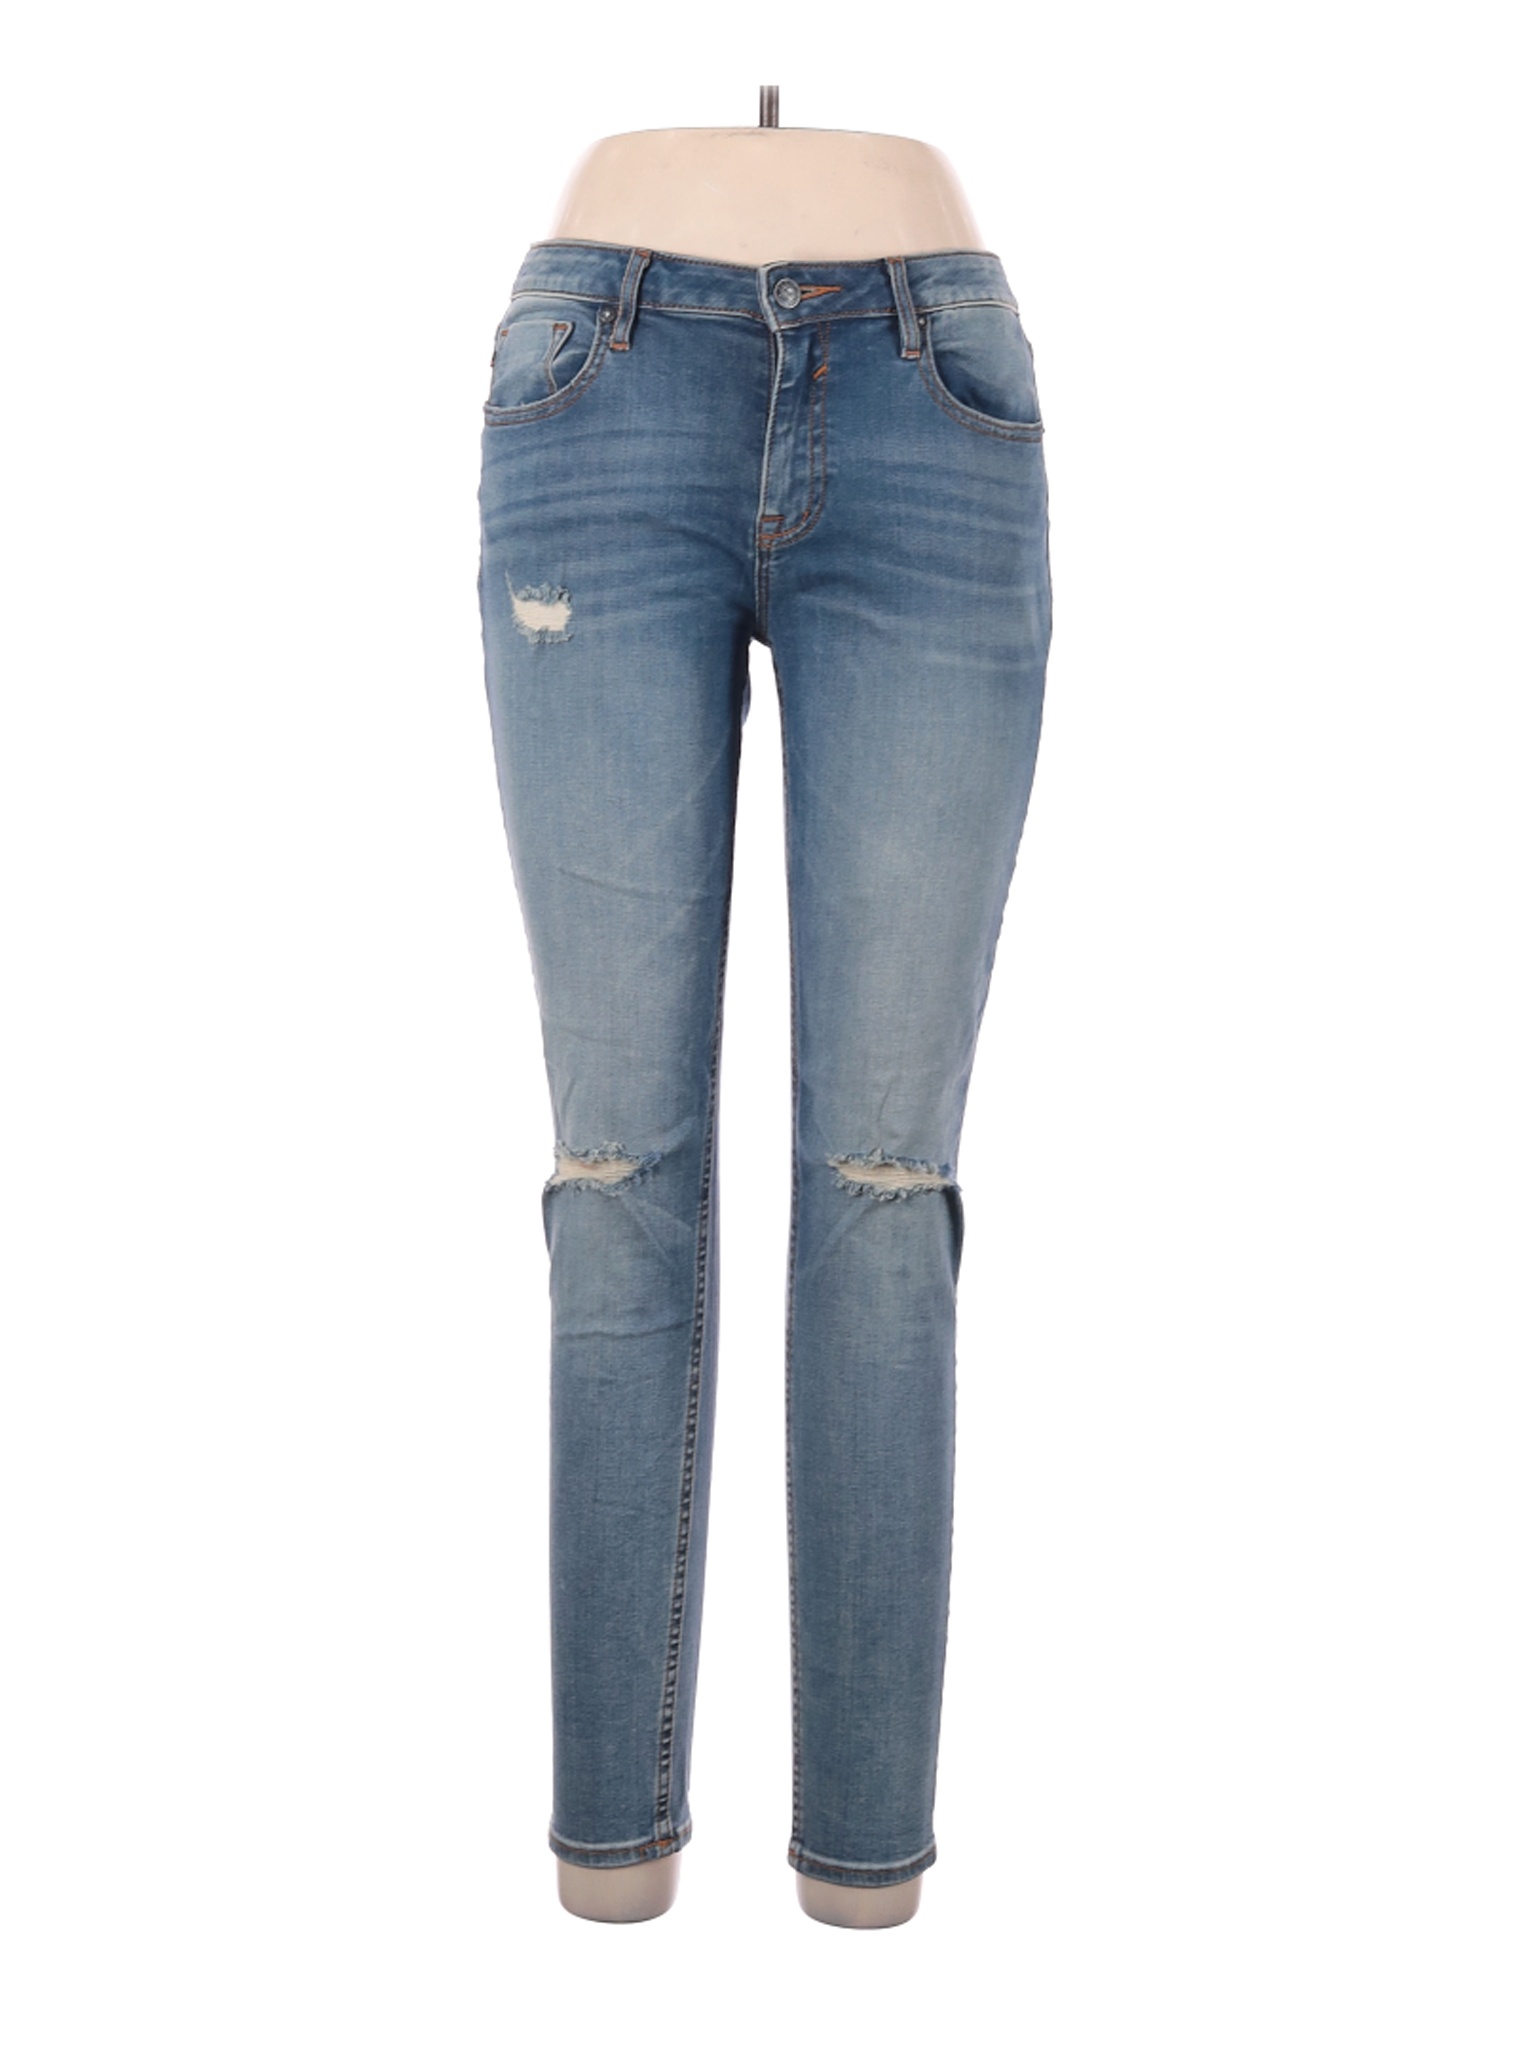 Vigoss Women Blue Jeans 30W | eBay